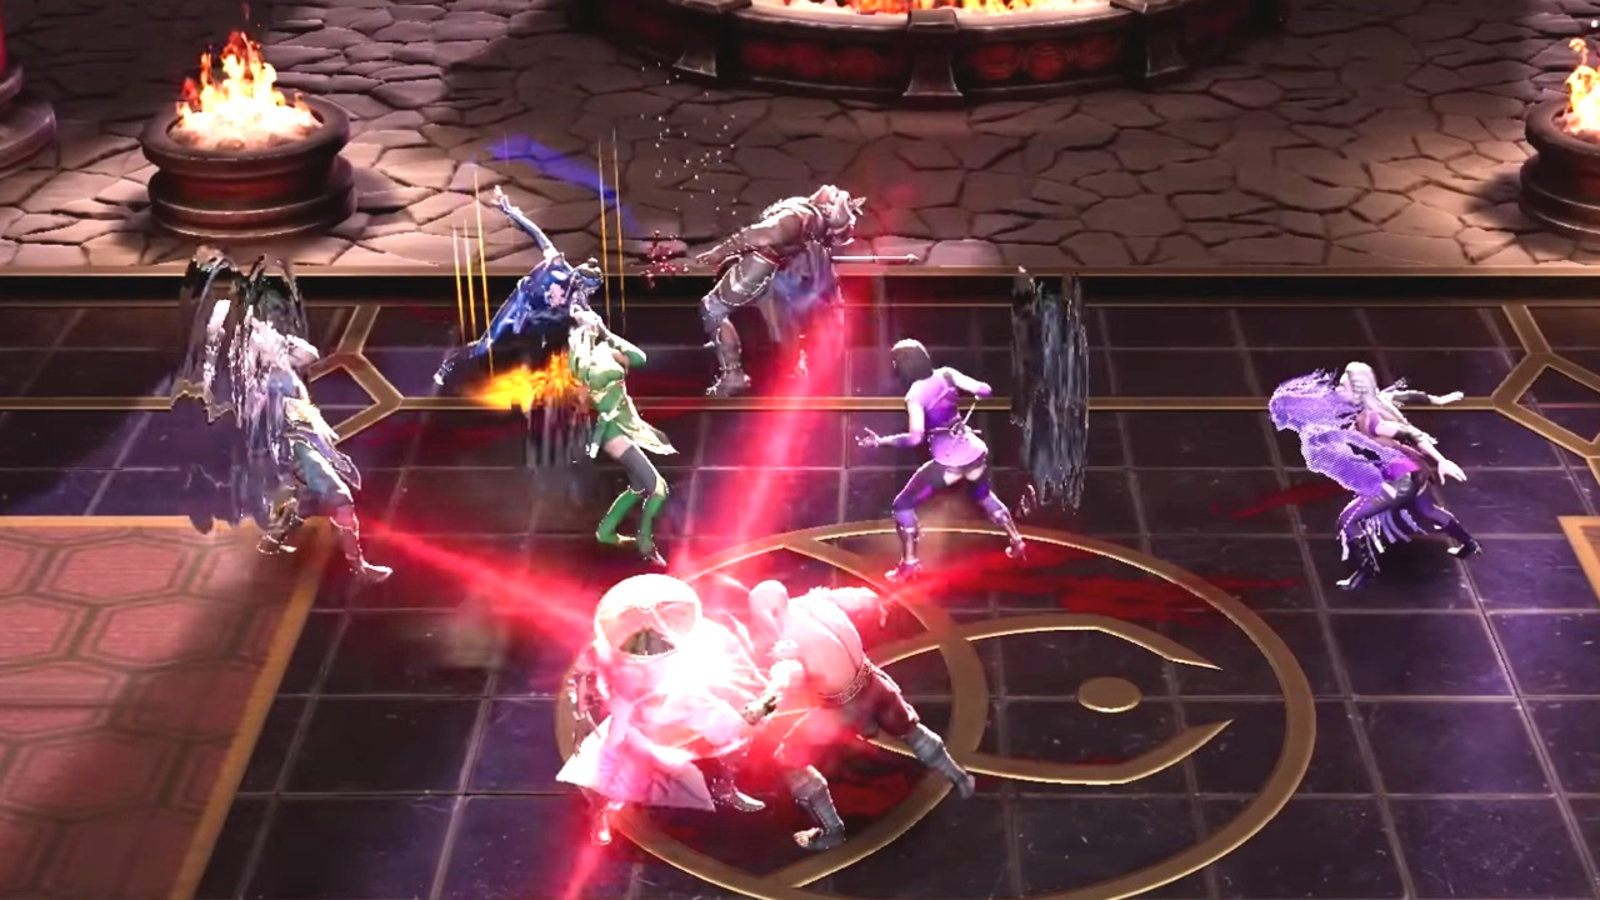 Mortal Kombat 4 - Raiden Playthrough + BIO & Ending 